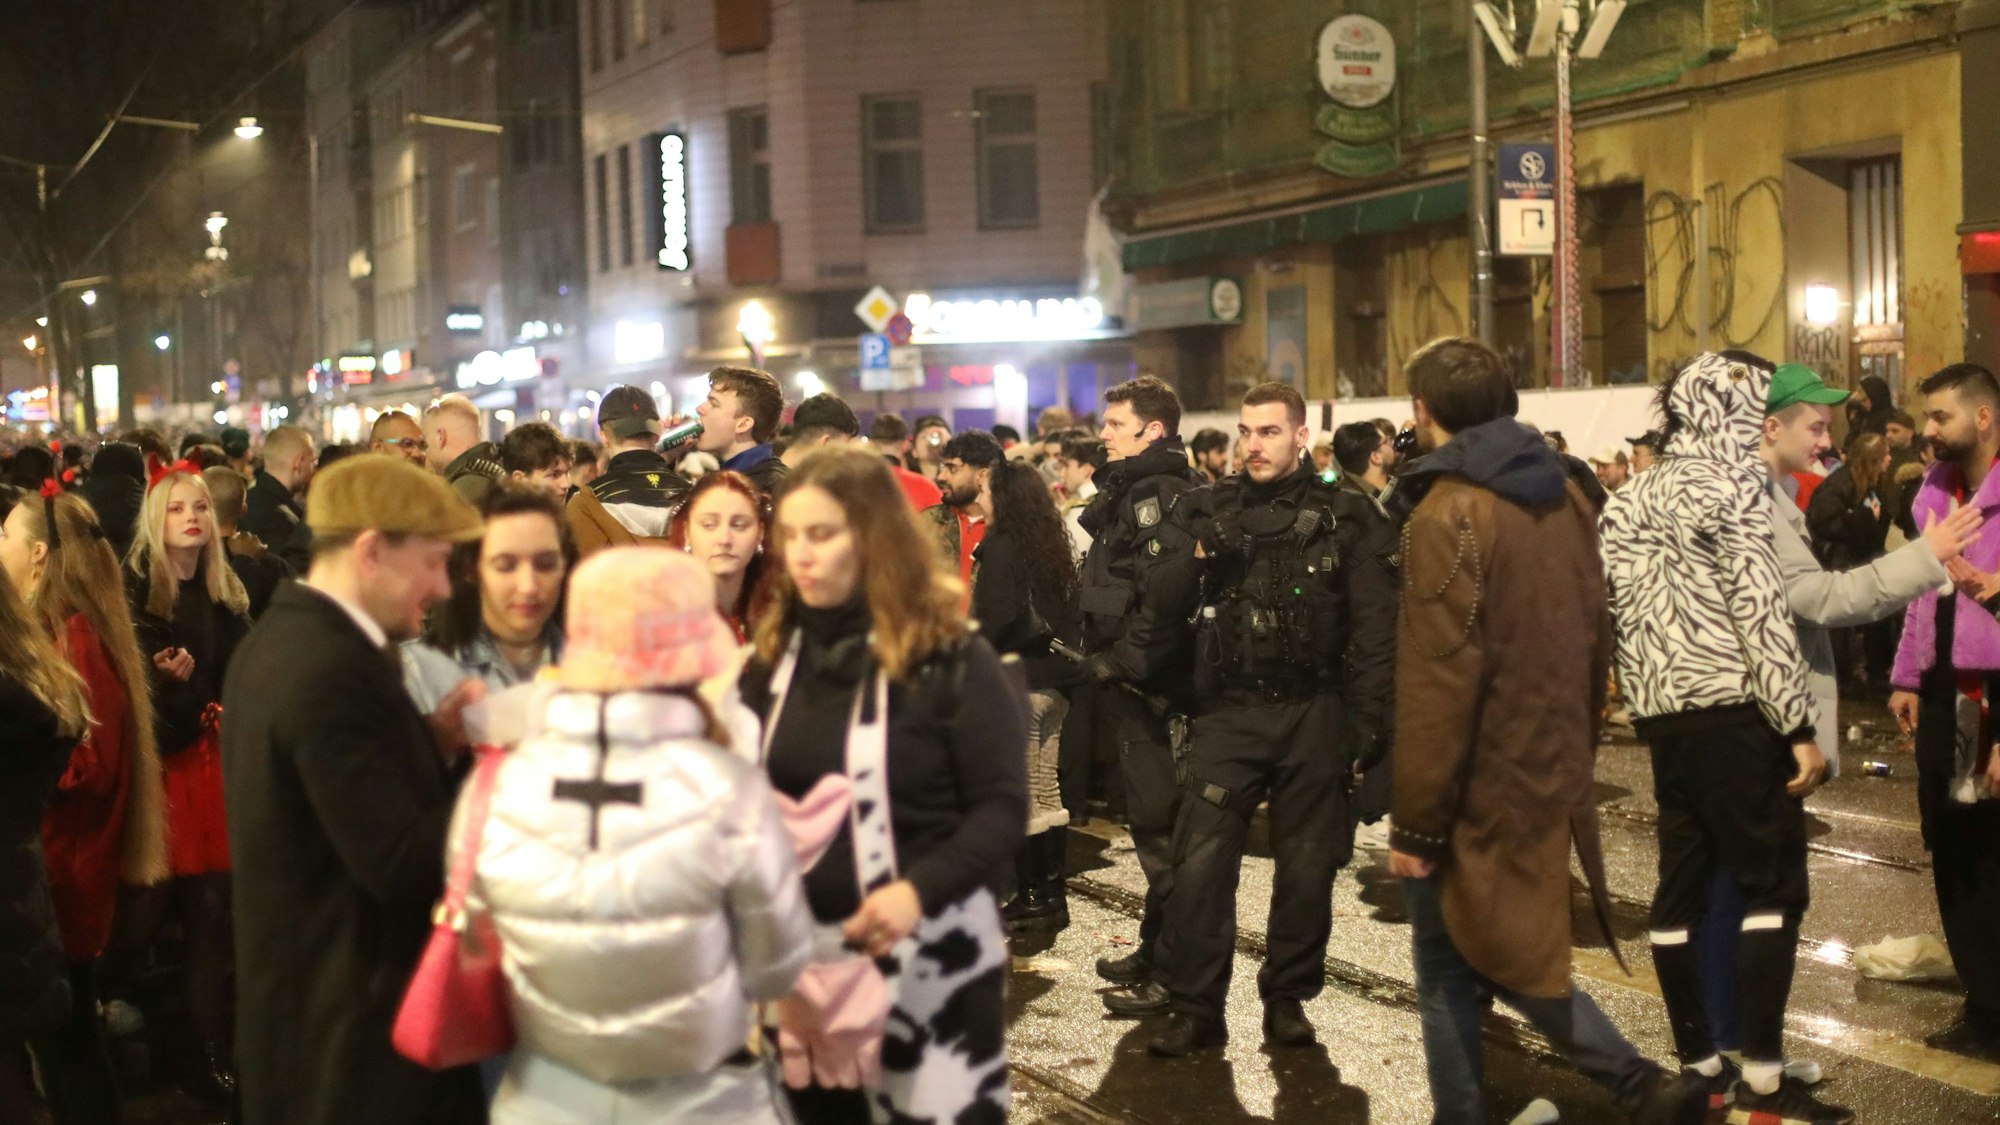 Karnevalisten stehen auf der Zülpicher Straße in der Nacht neben Polizisten.